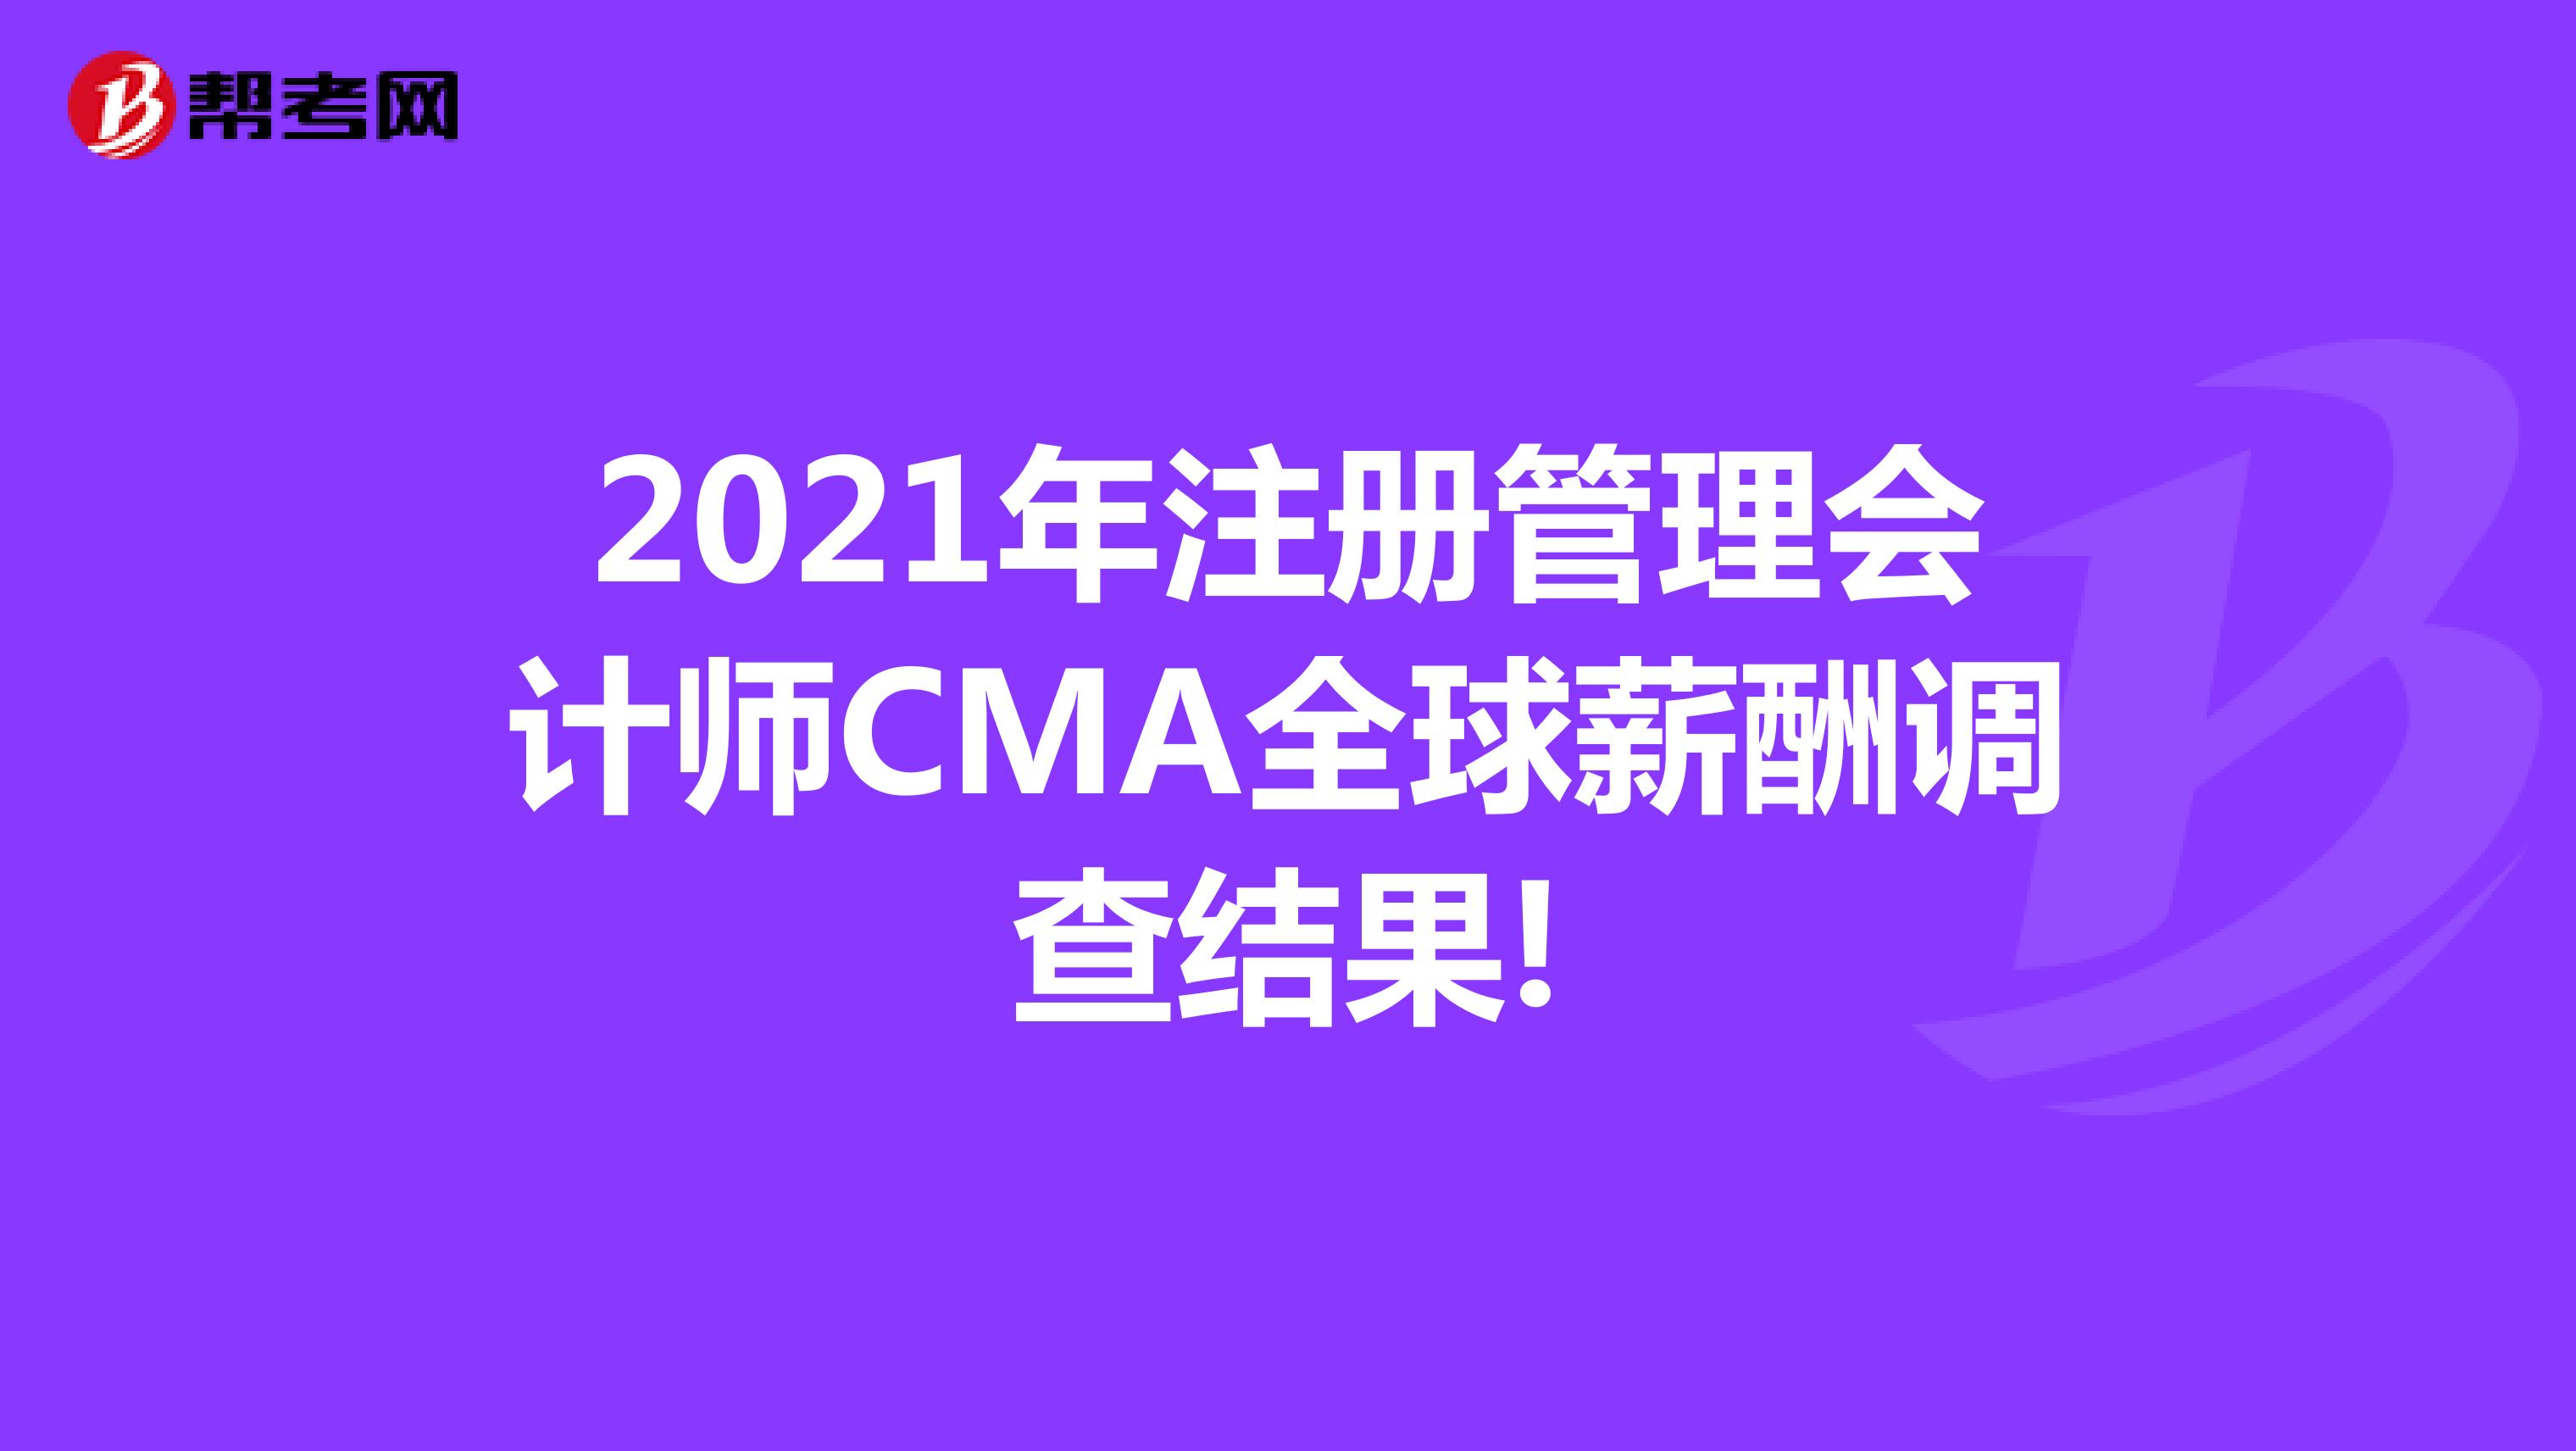 2021年注册管理会计师CMA全球薪酬调查结果!